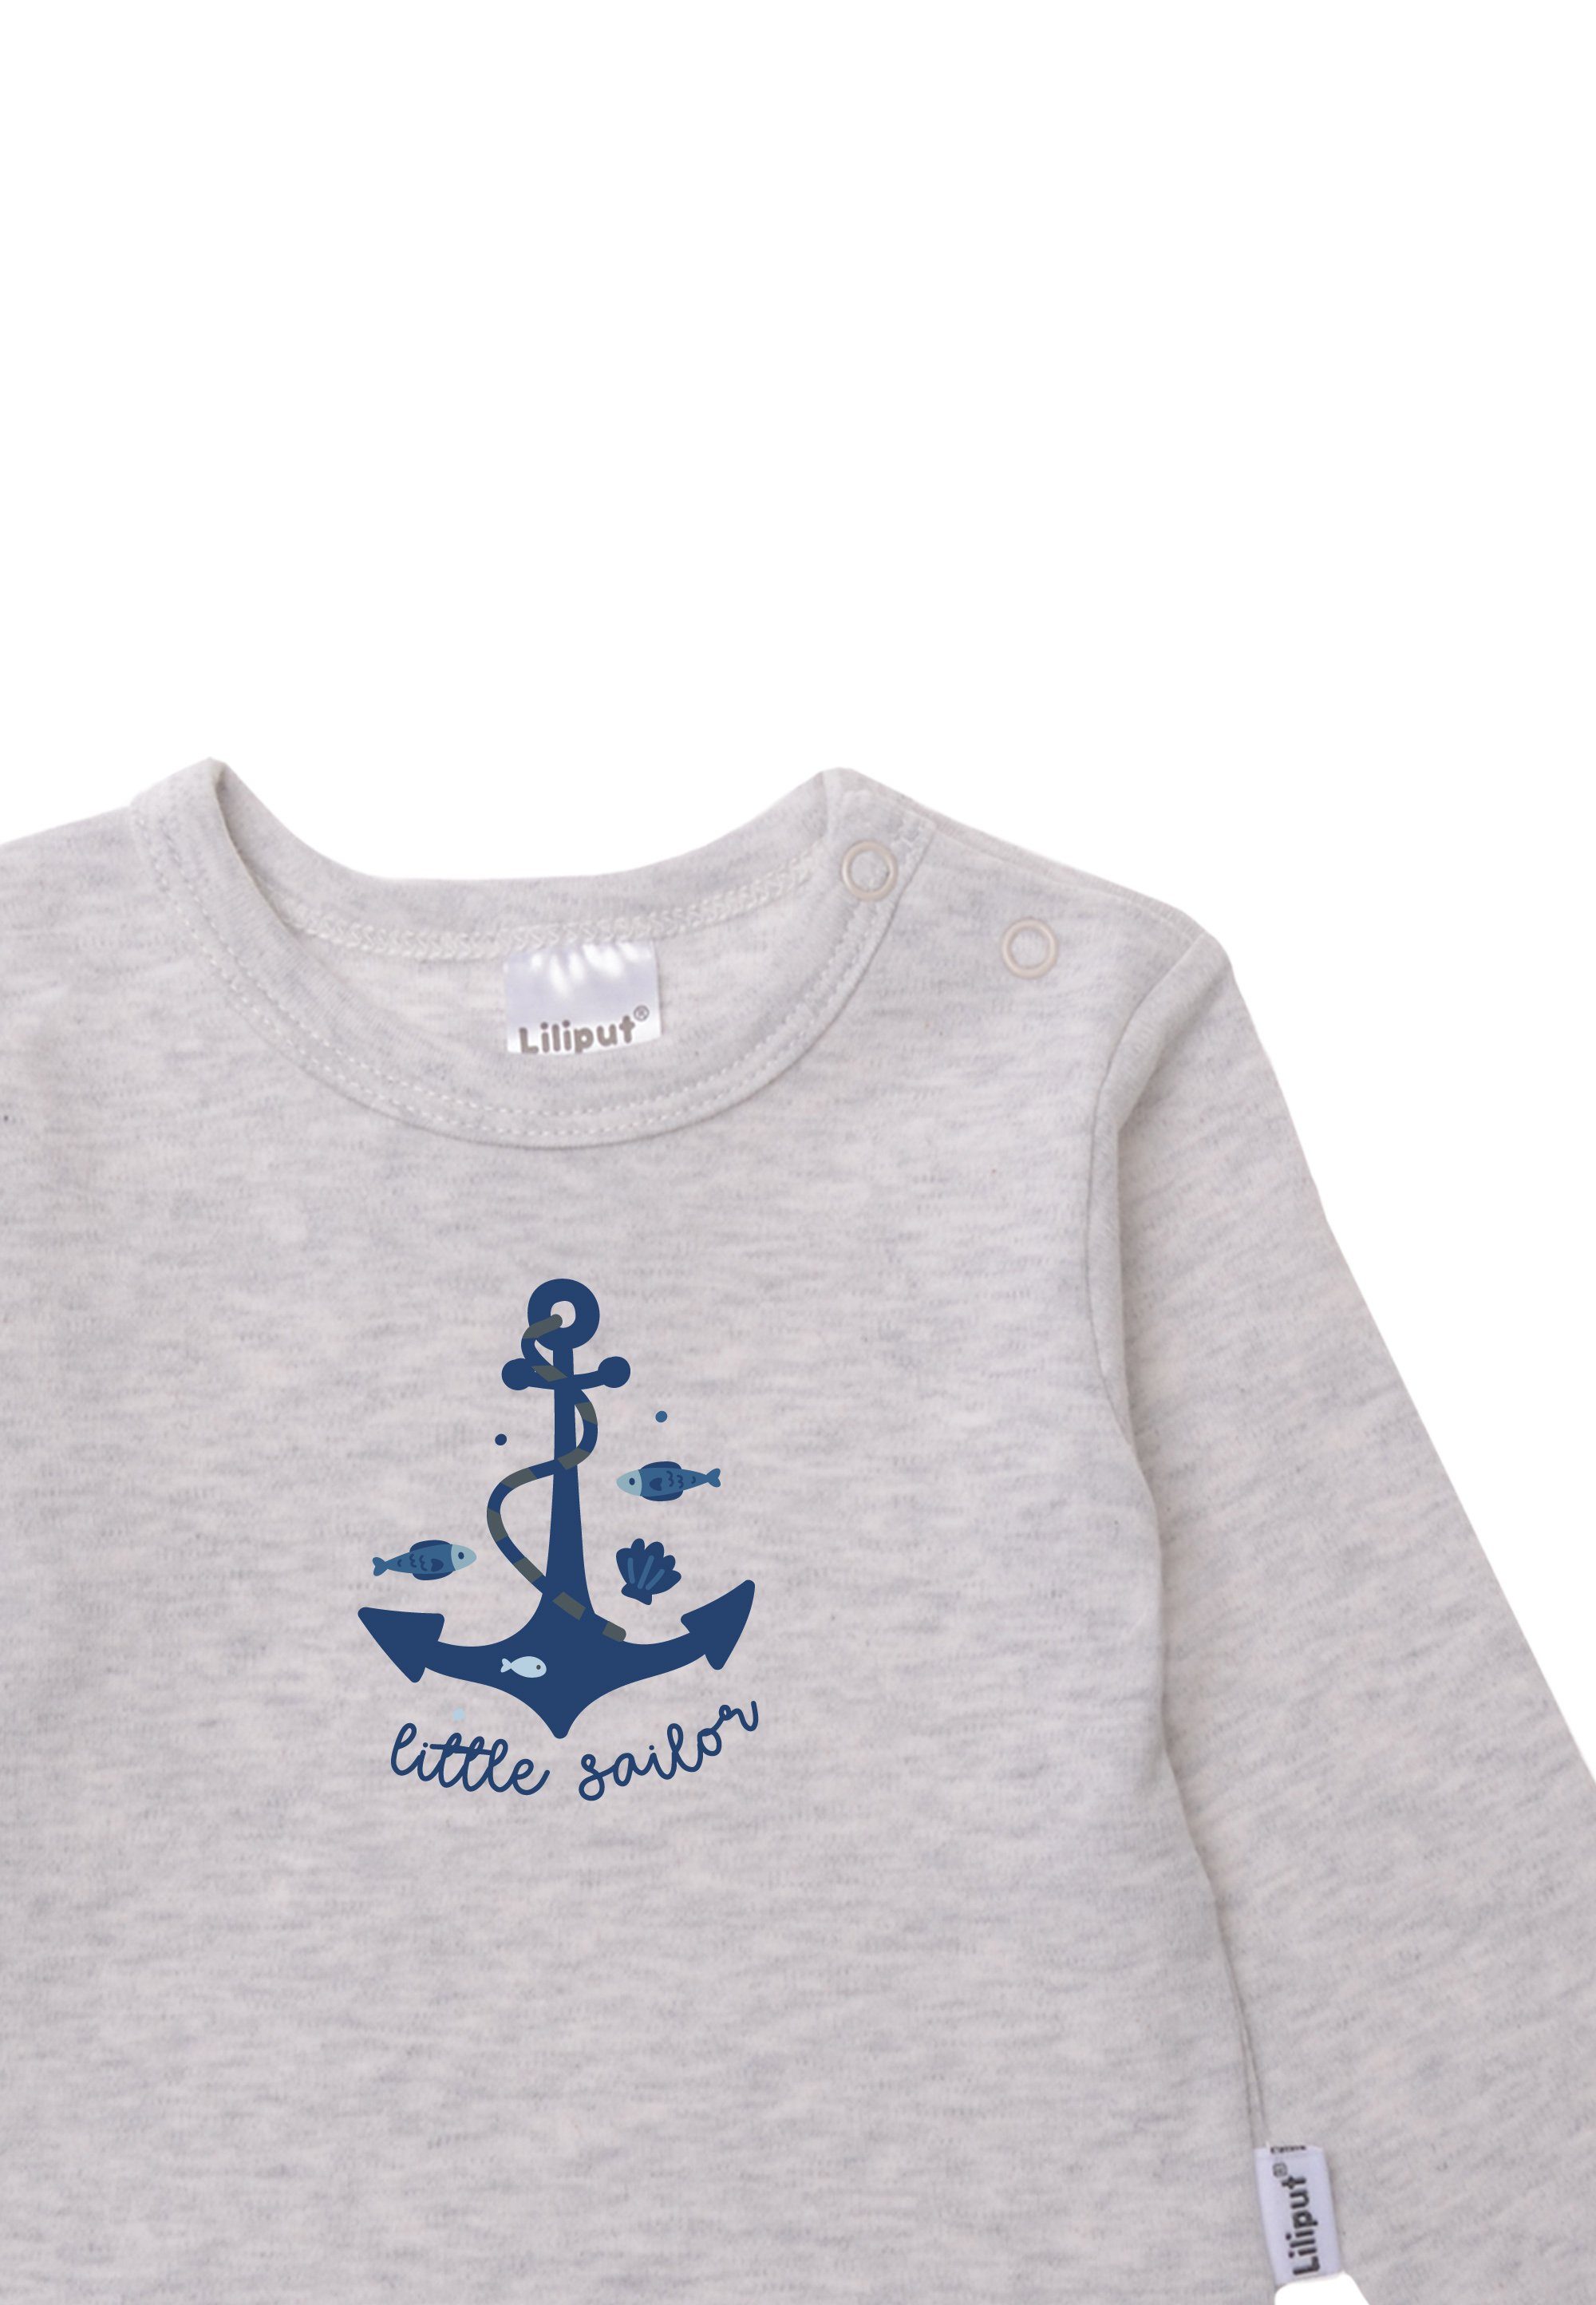 aus 2er-Pack Sailor Little T-Shirt Baumwoll-Material Liliput weichem